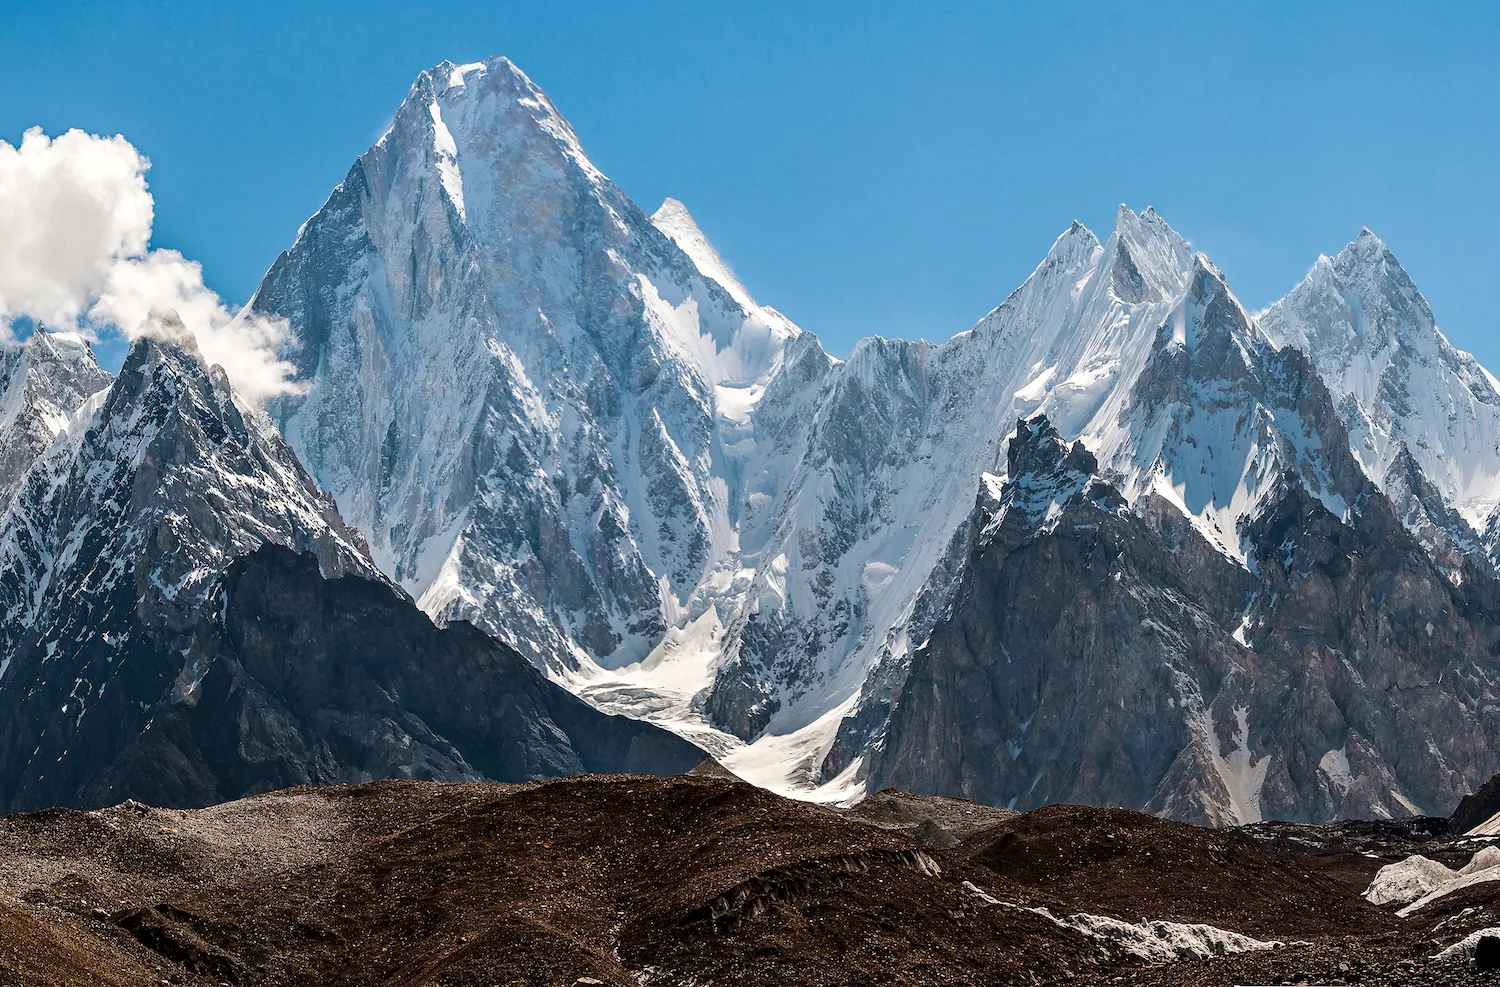 Les altres muntanyes de Gasherbrum, frontera entre de la regió de Xinjiang i Pakistan